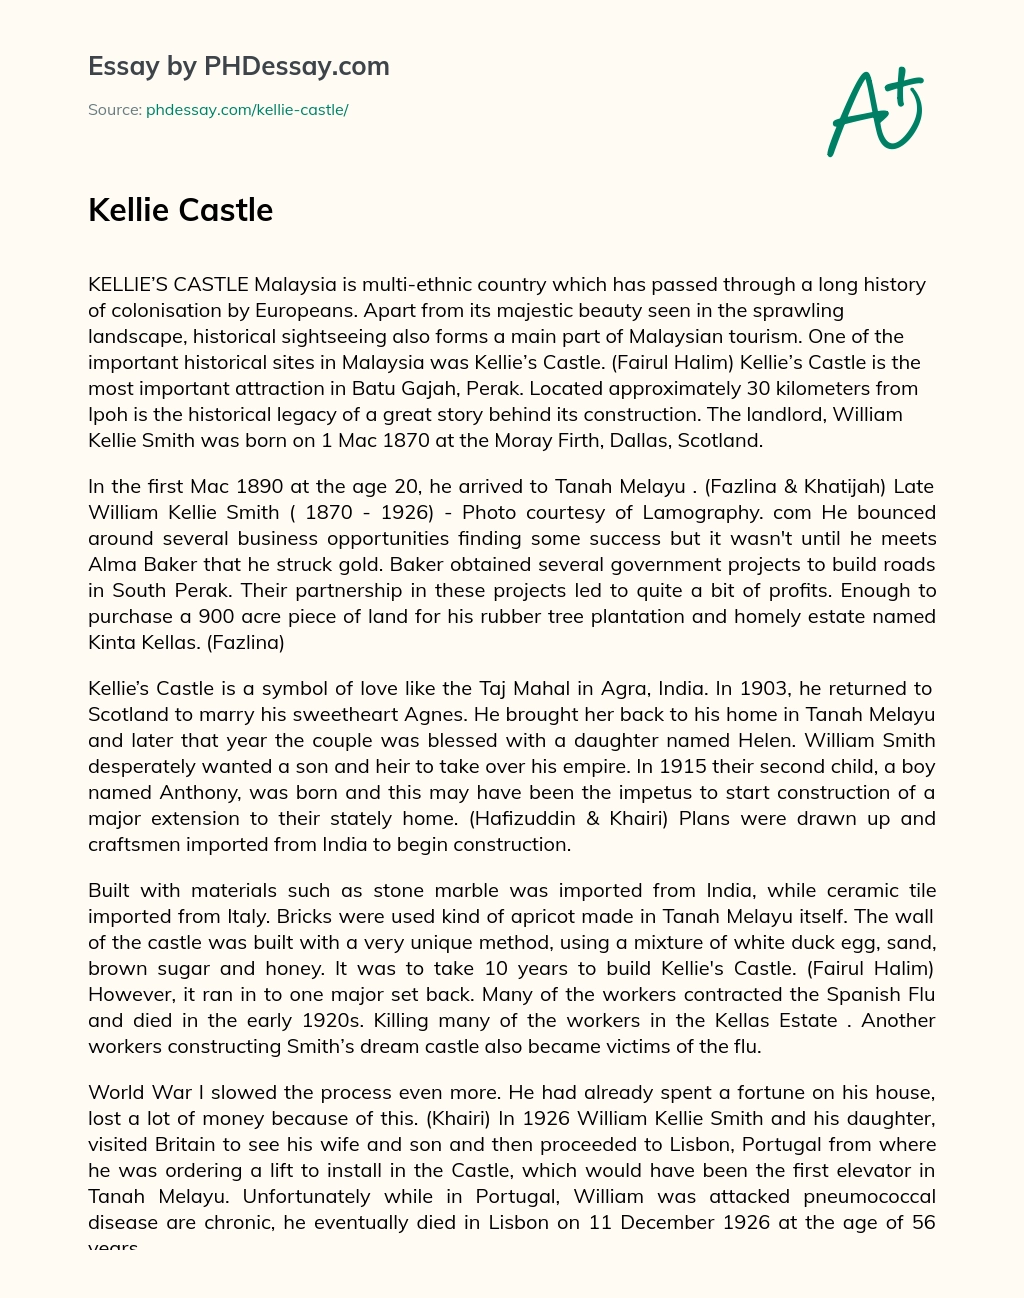 Kellie Castle essay